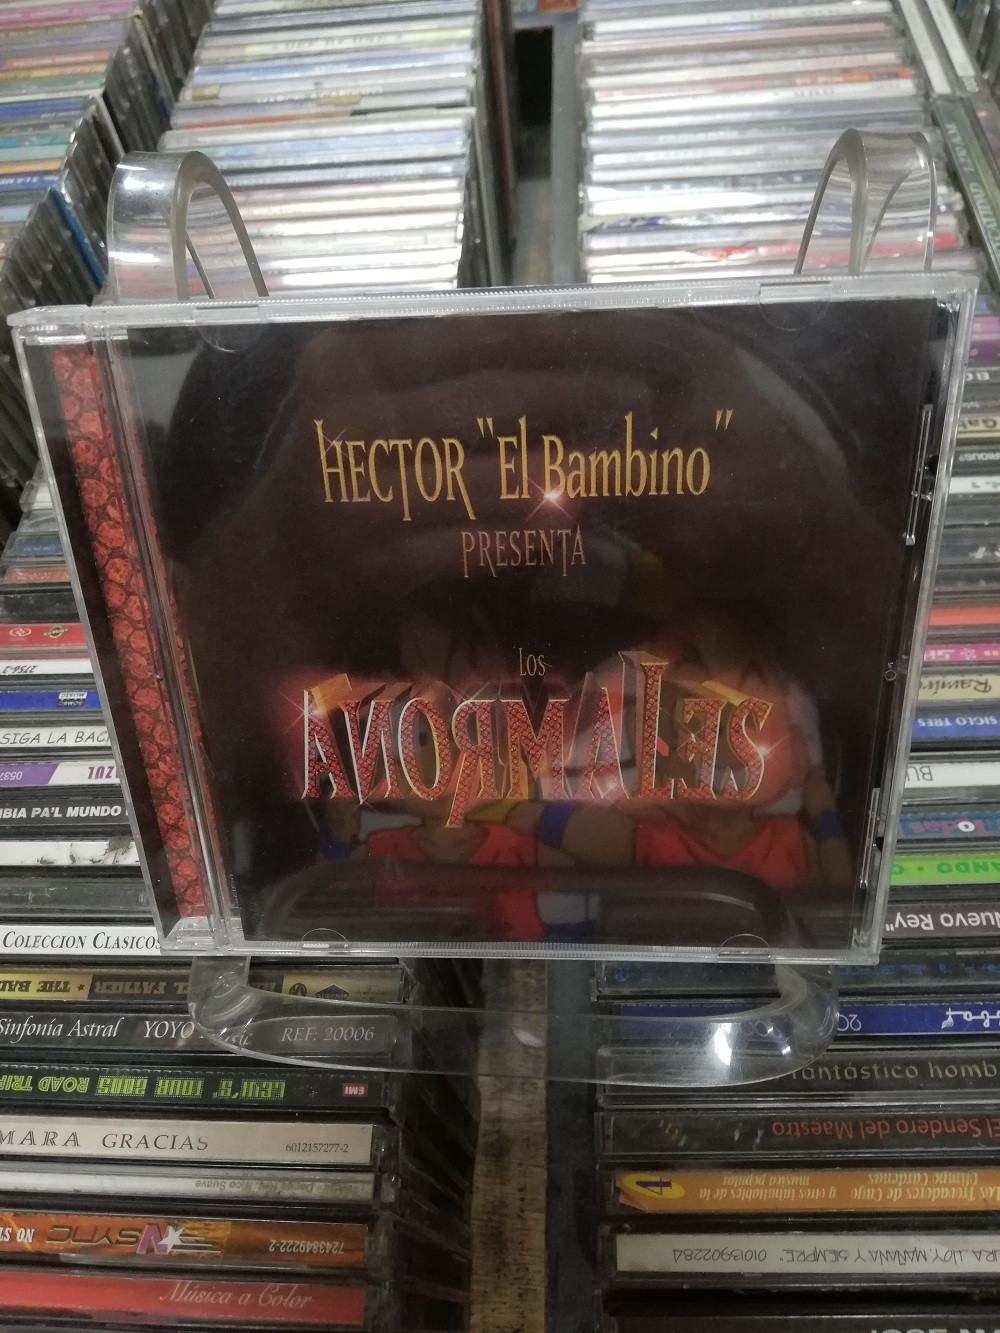 Imagen CD HECTOR "EL BAMBINO" - LOS ANORMALES